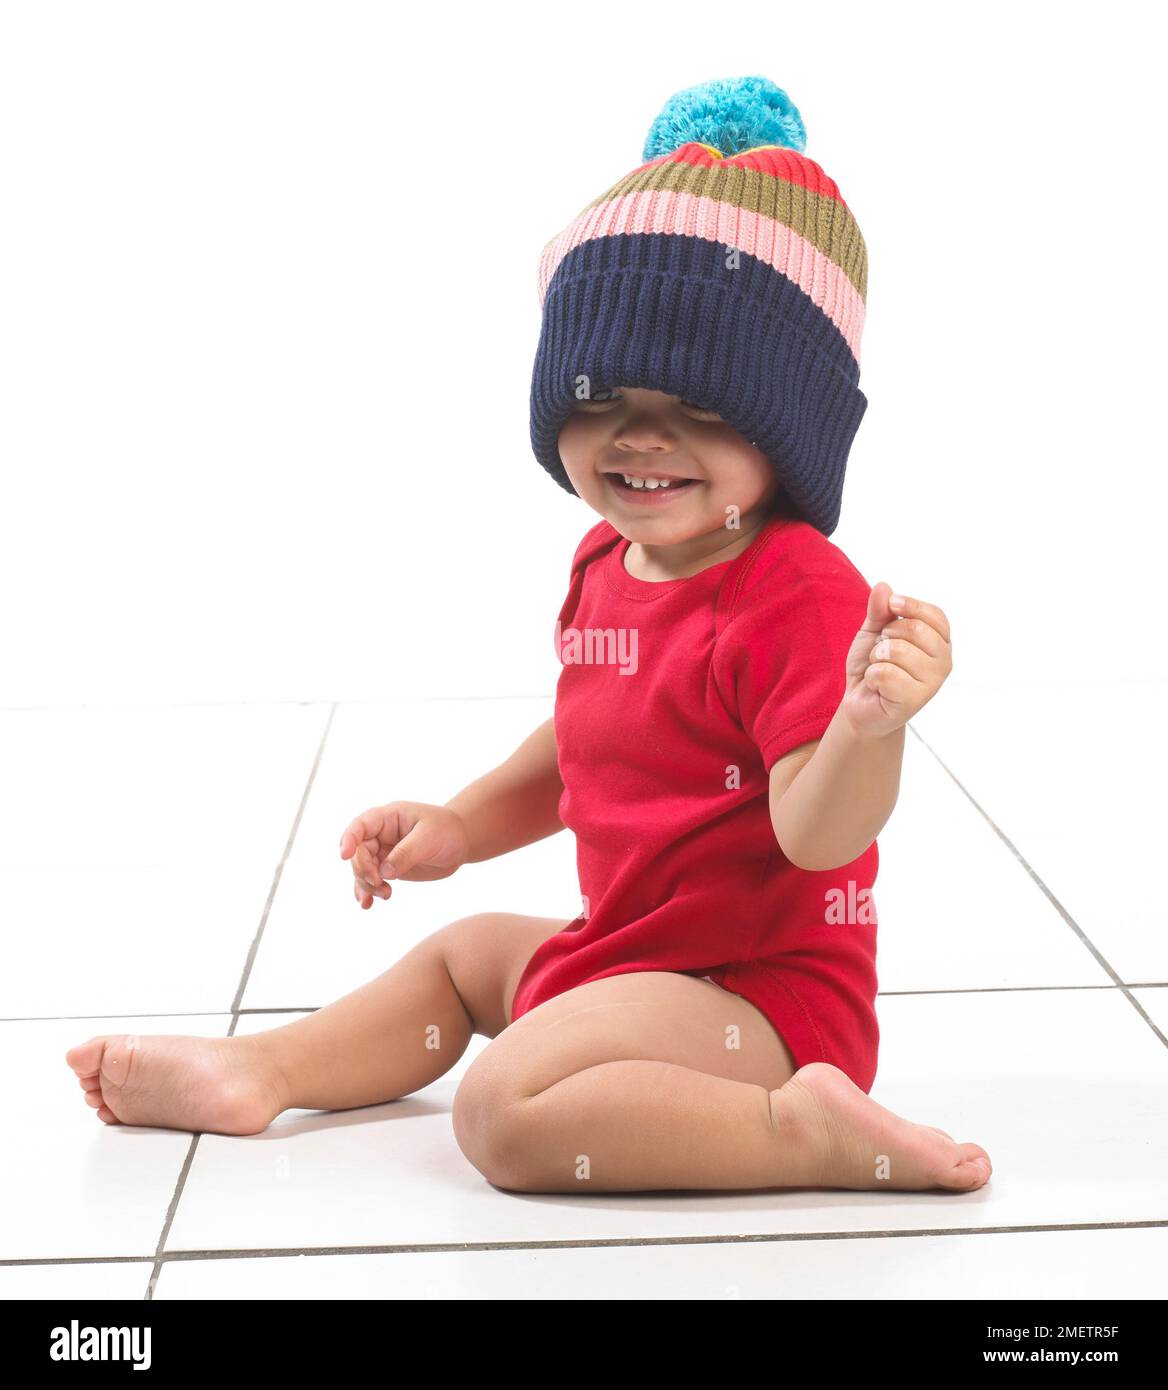 Bambino (16 mesi) con cappello colorato a righe Foto Stock